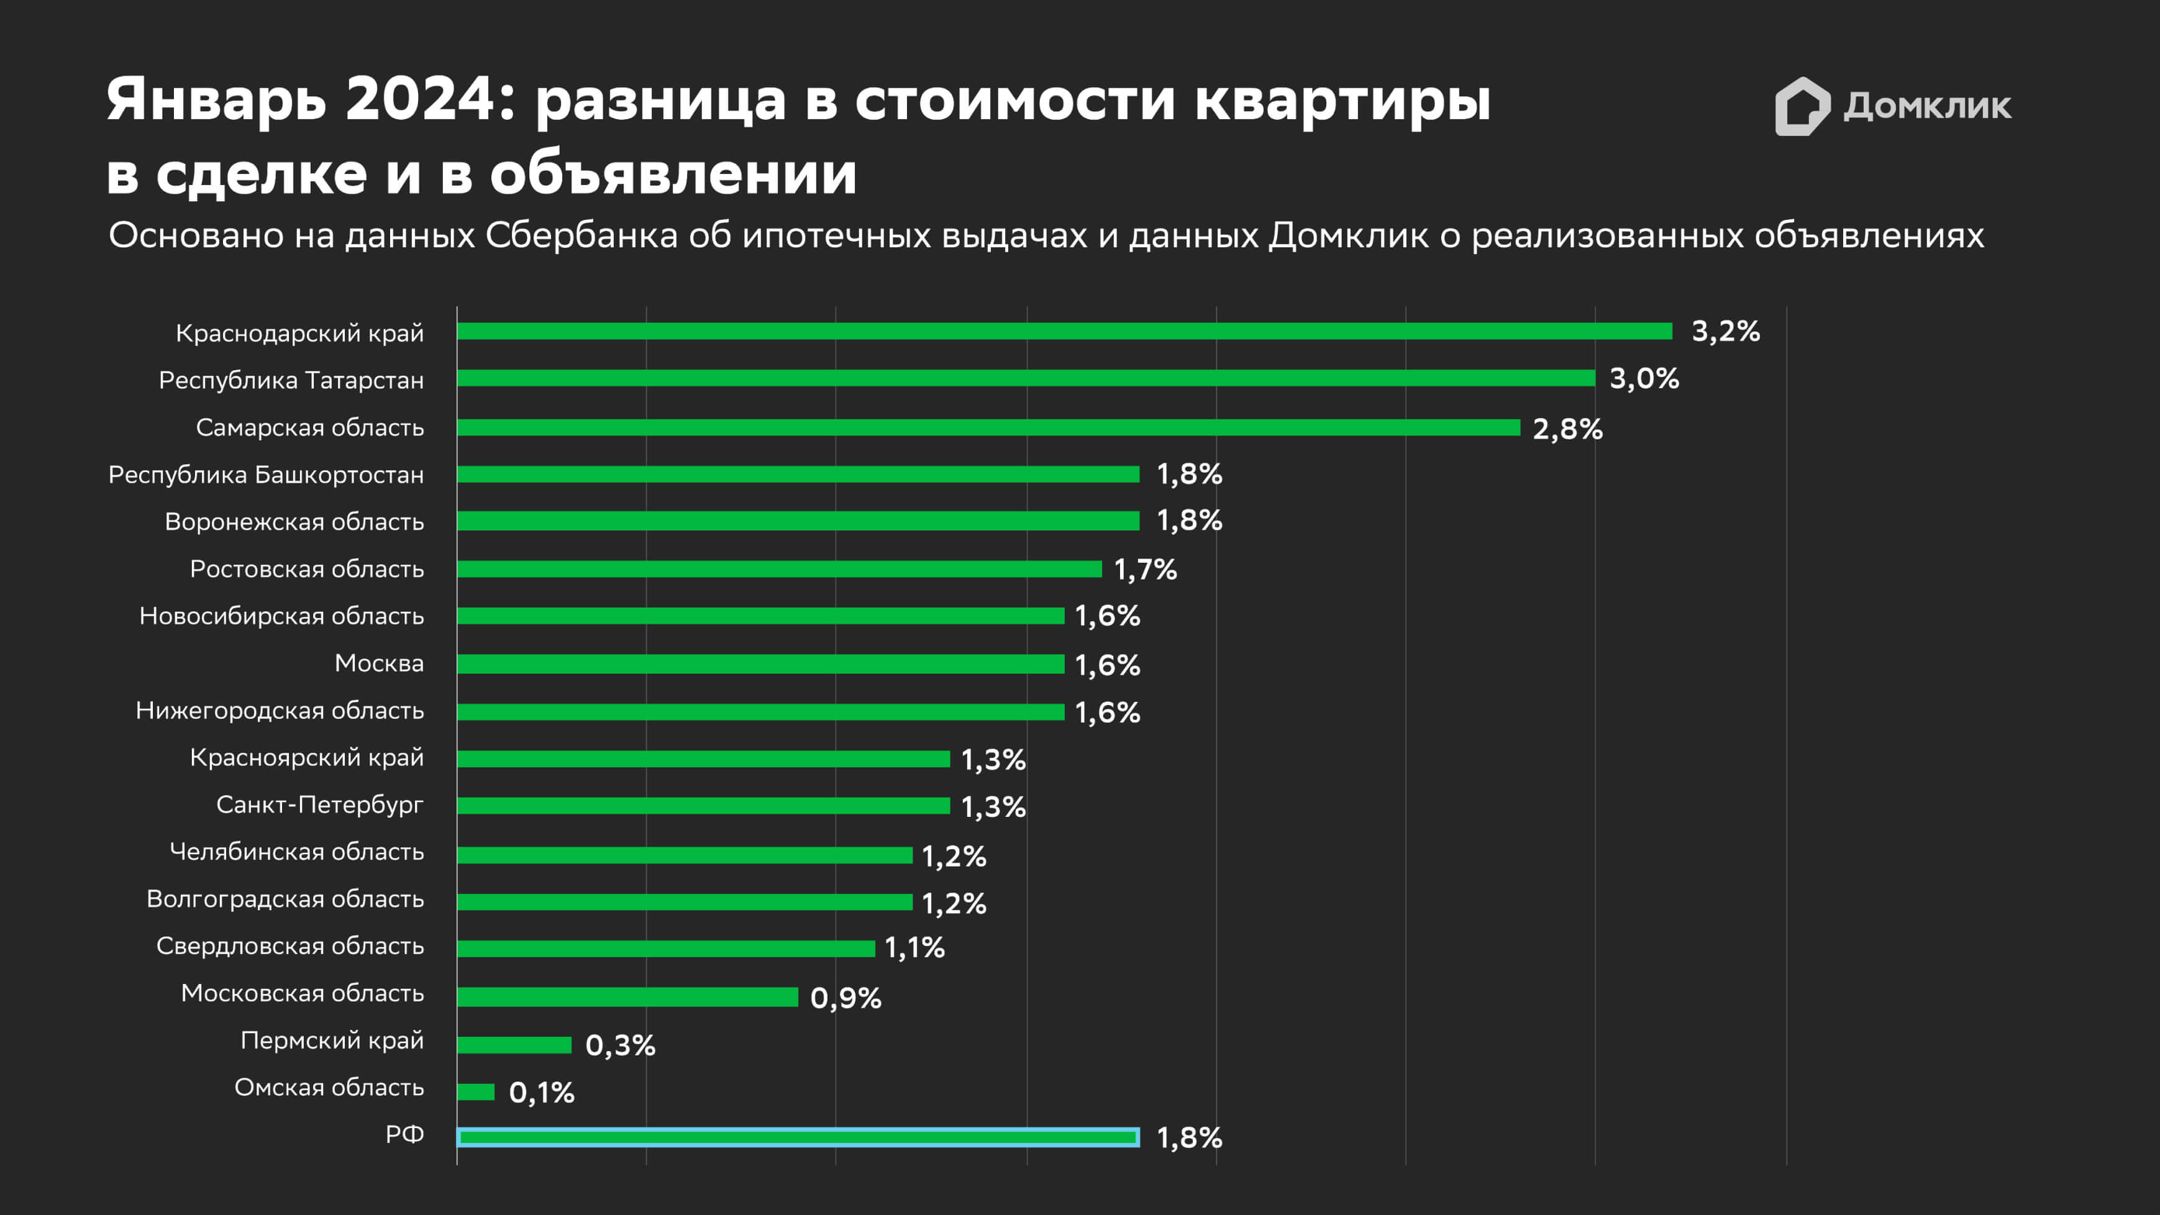 Величина скидки на вторичном рынке в крупнейших регионах РФ. Данные за январь 2024 года